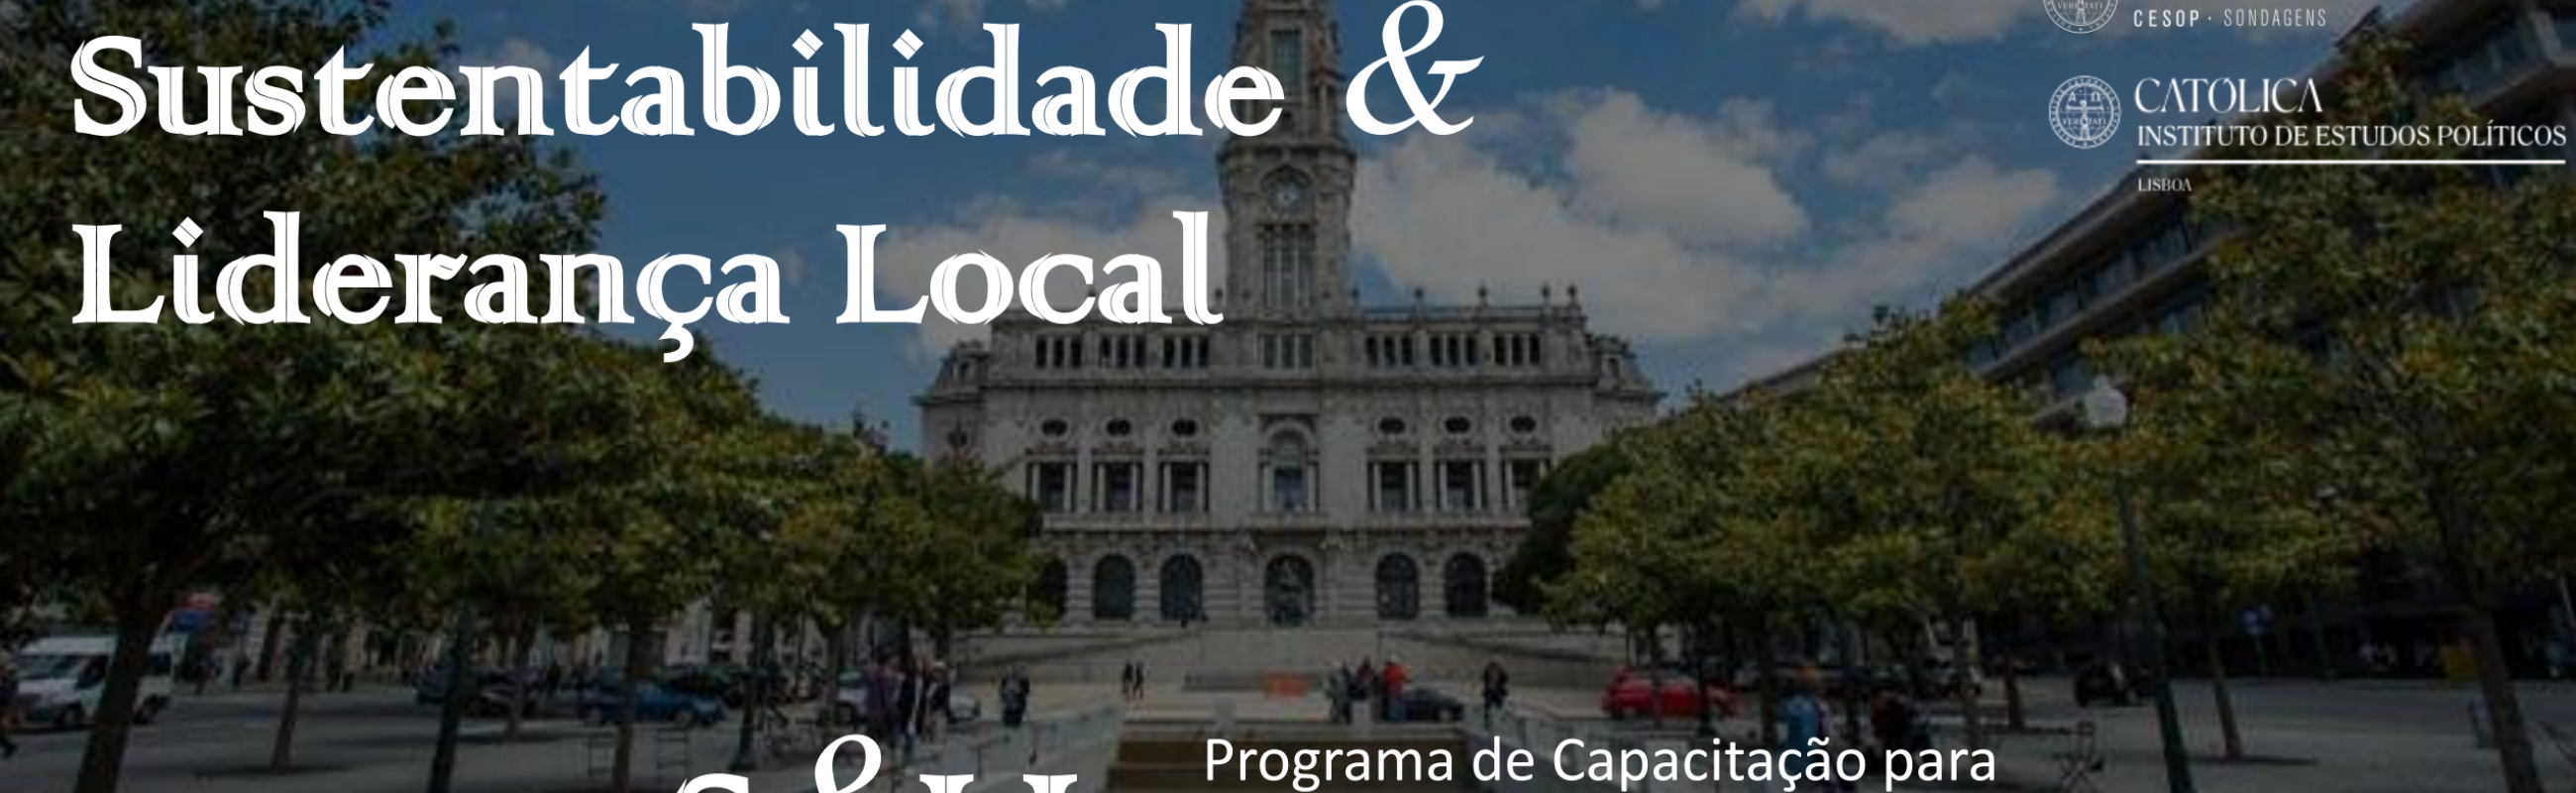 Programa de Capacitação Avançado em Sustentabilidade e Liderança Local da Universidade católica Portuguesa. Uma iniciativa do CESOP-Local em parceria com o Instituto de Estudos Políticos